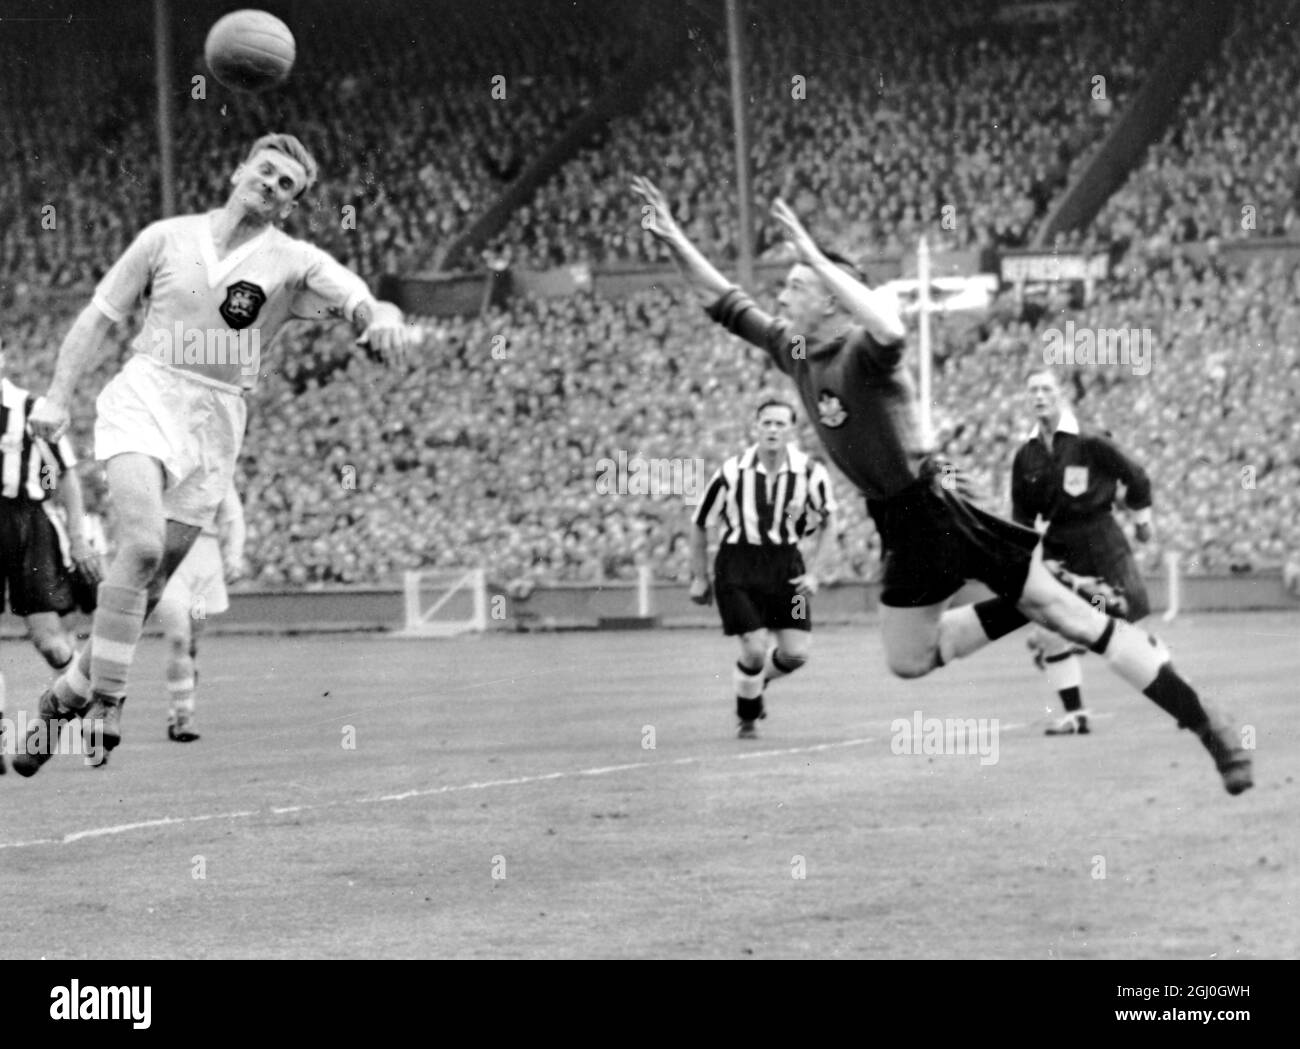 During the 1965 fa cup final Banque d'images noir et blanc - Alamy